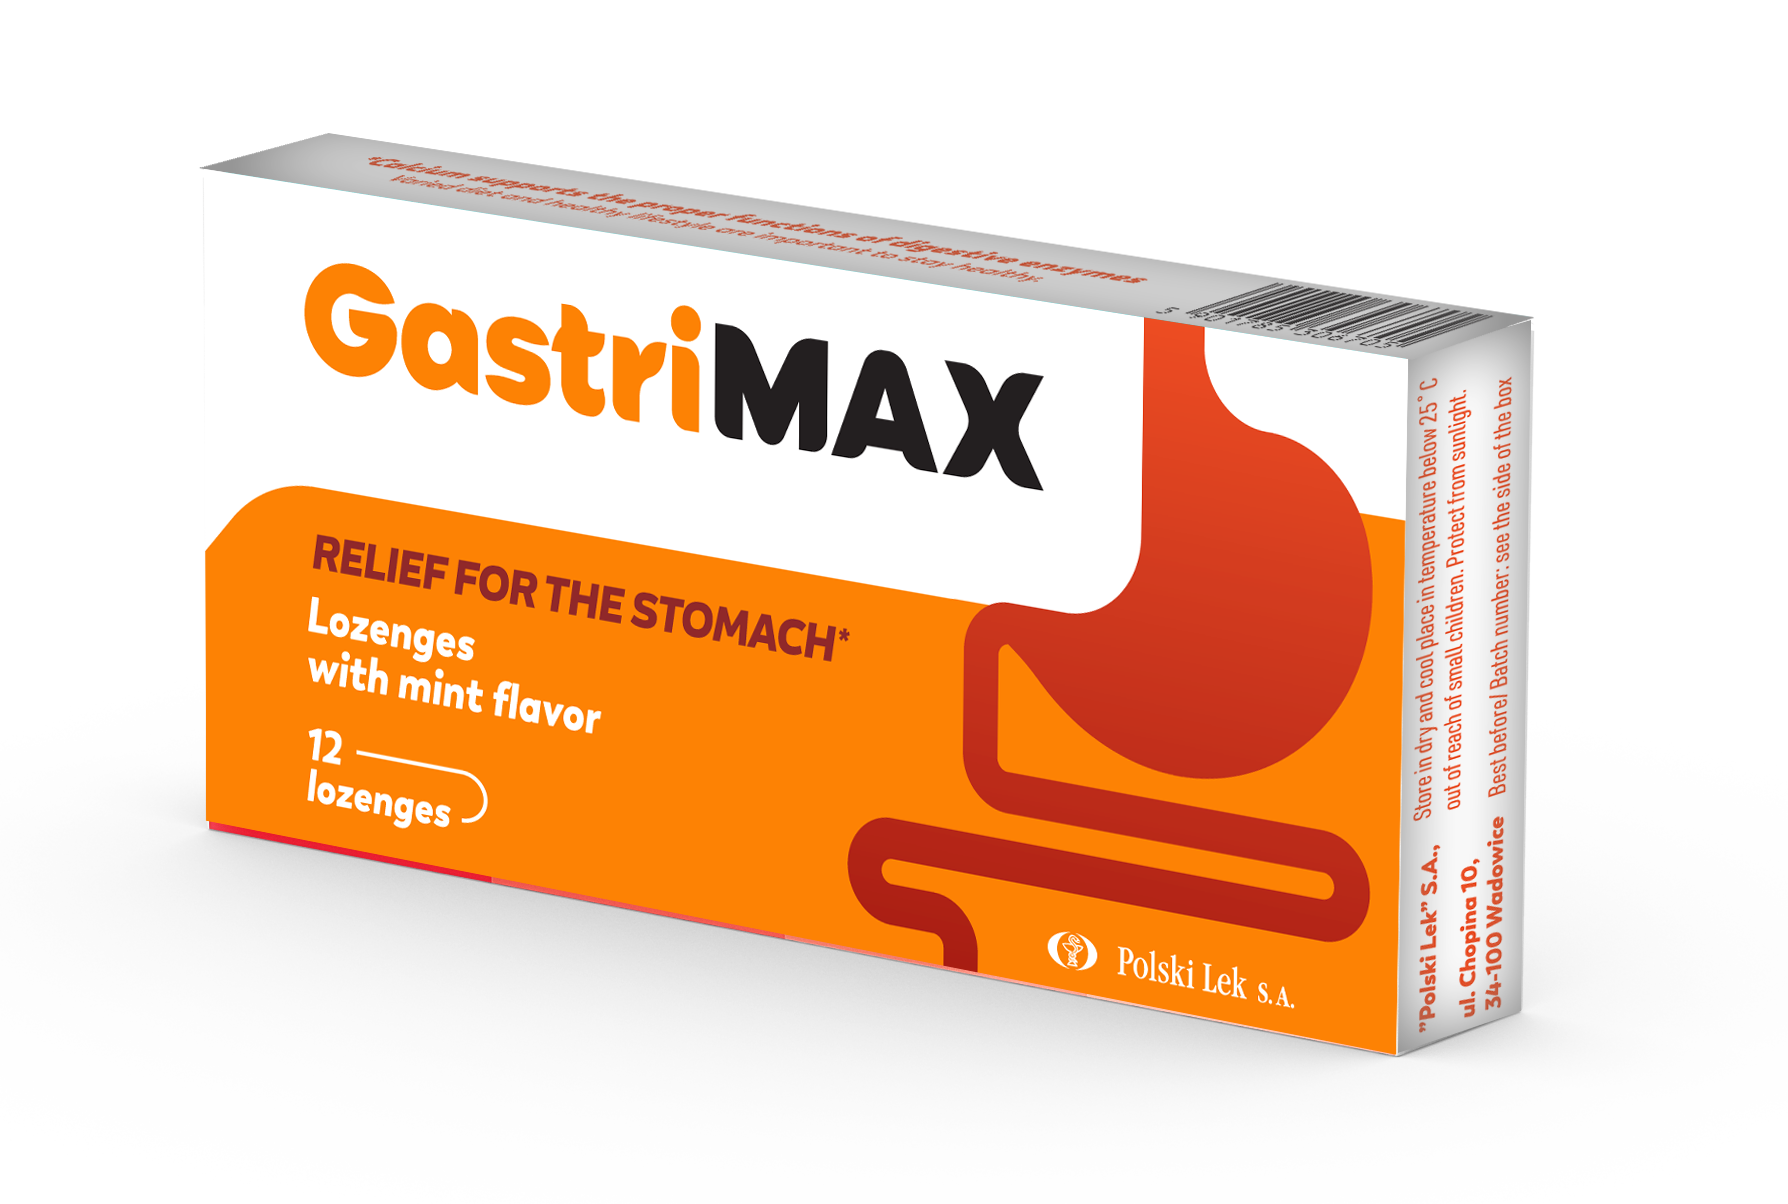 Viên ngậm Gastrimax hỗ trợ giảm nhẹ acid dạ dày, đầy hơi, ợ chua, buồn nôn - 1 vỉ x 12 viên ngậm